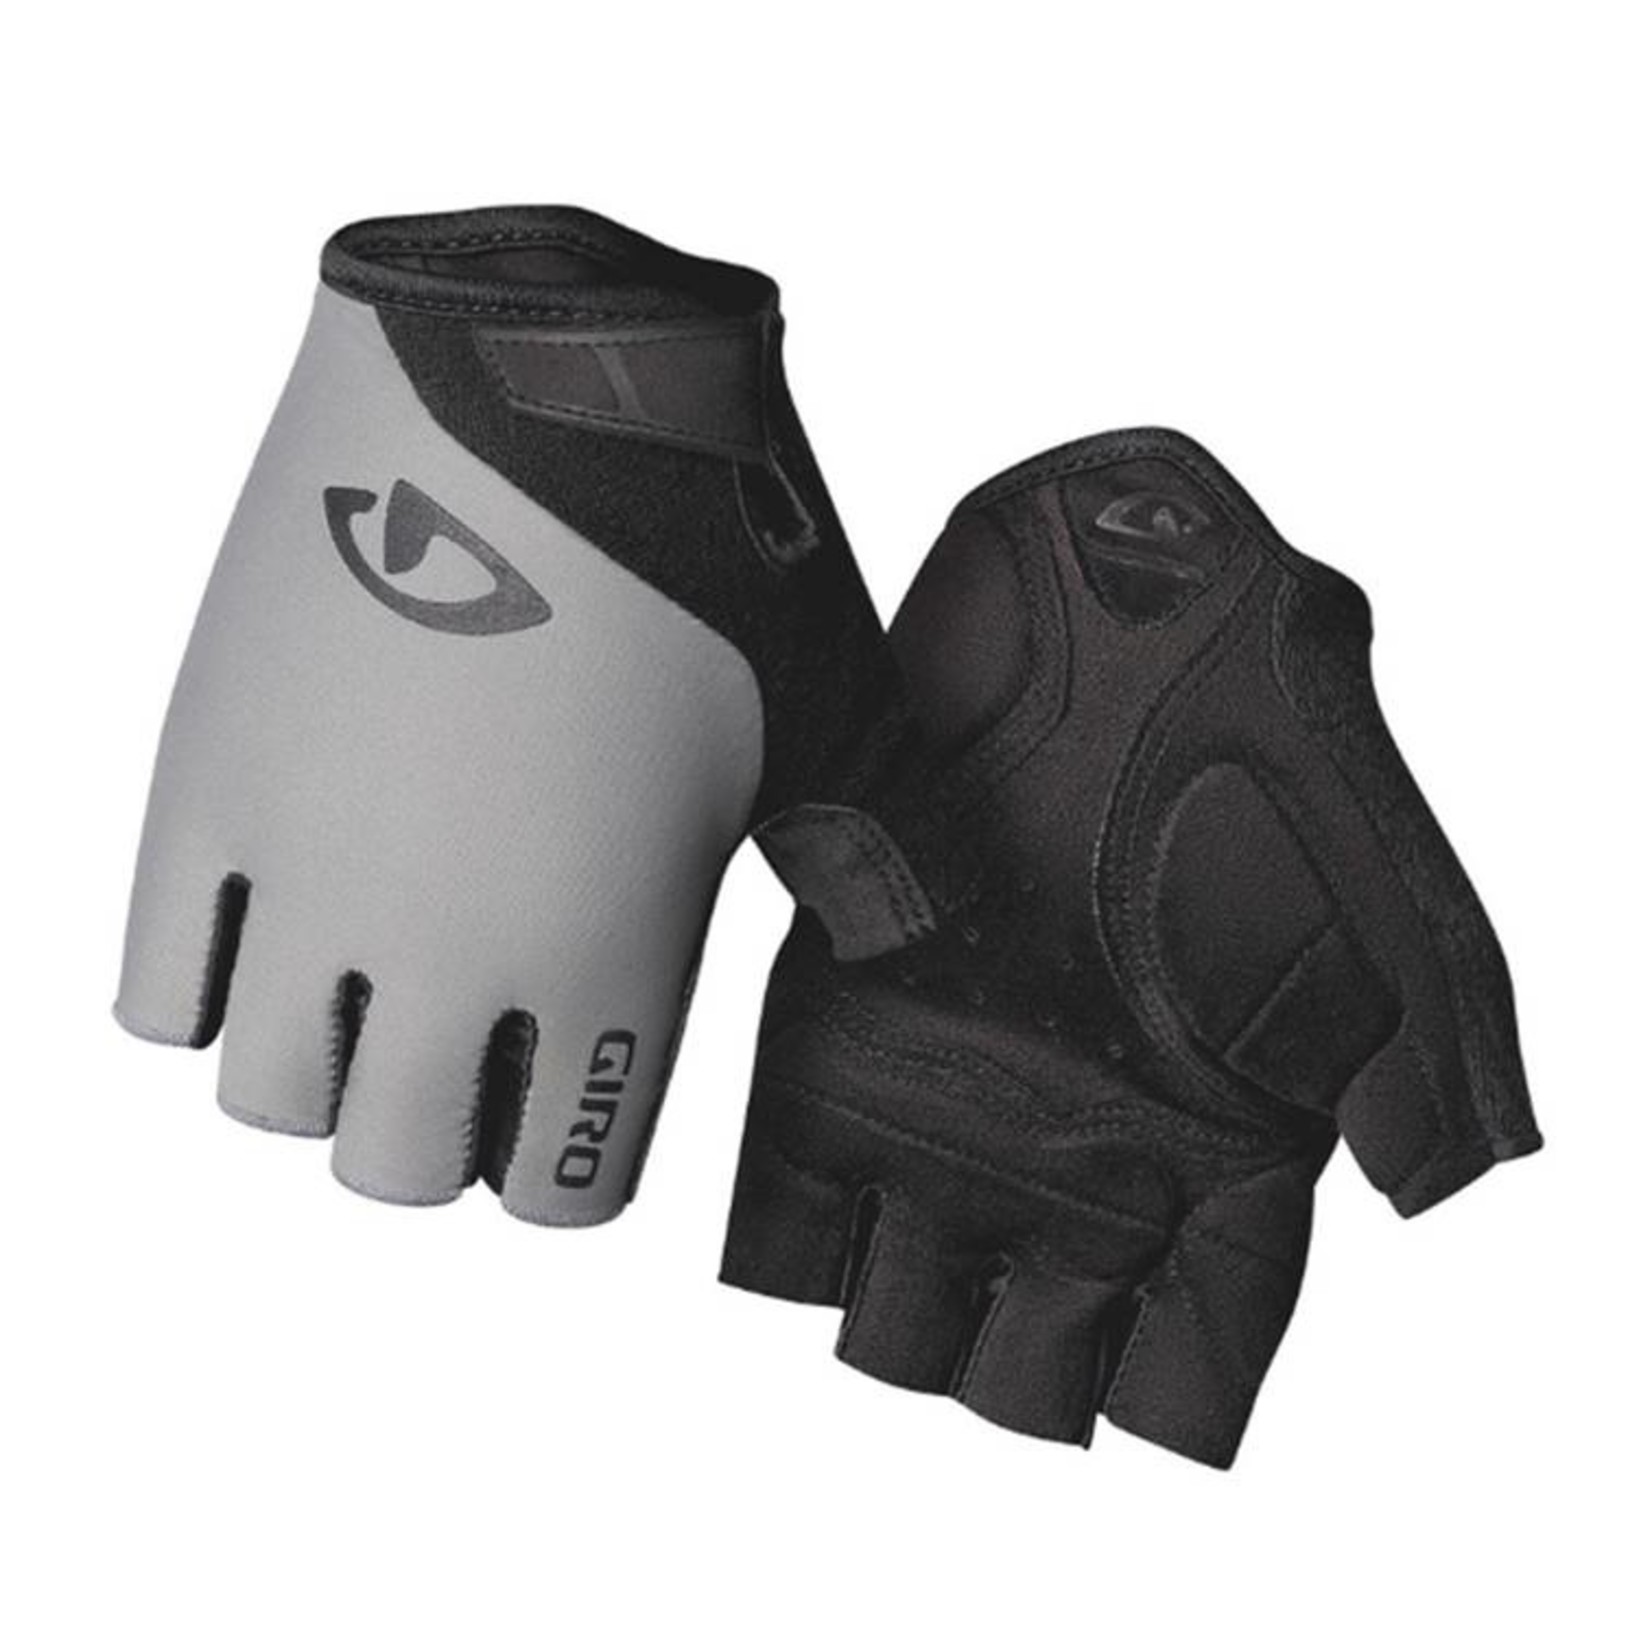 Giro Jag Short Finger Glove